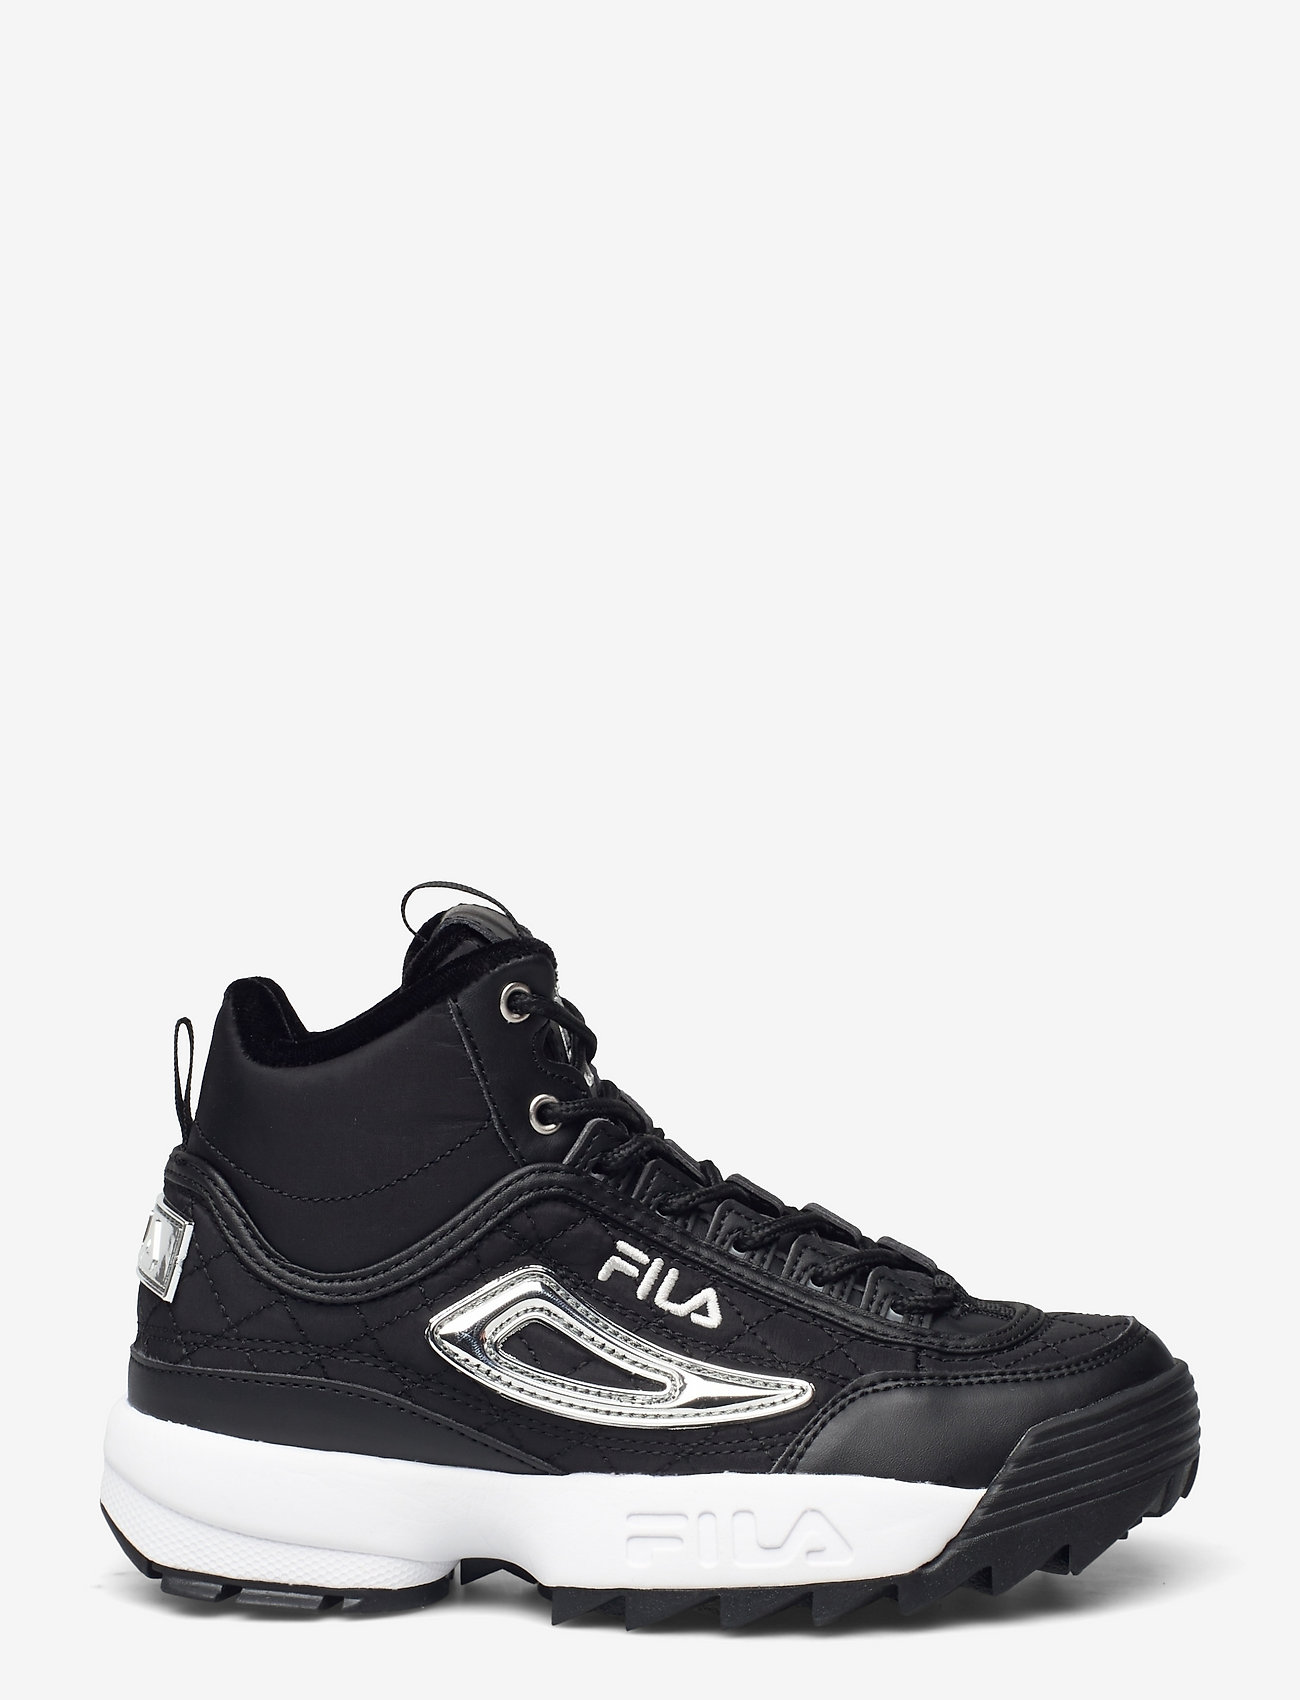 FILA Disruptor Q Mid - High top sneakers | Boozt.com